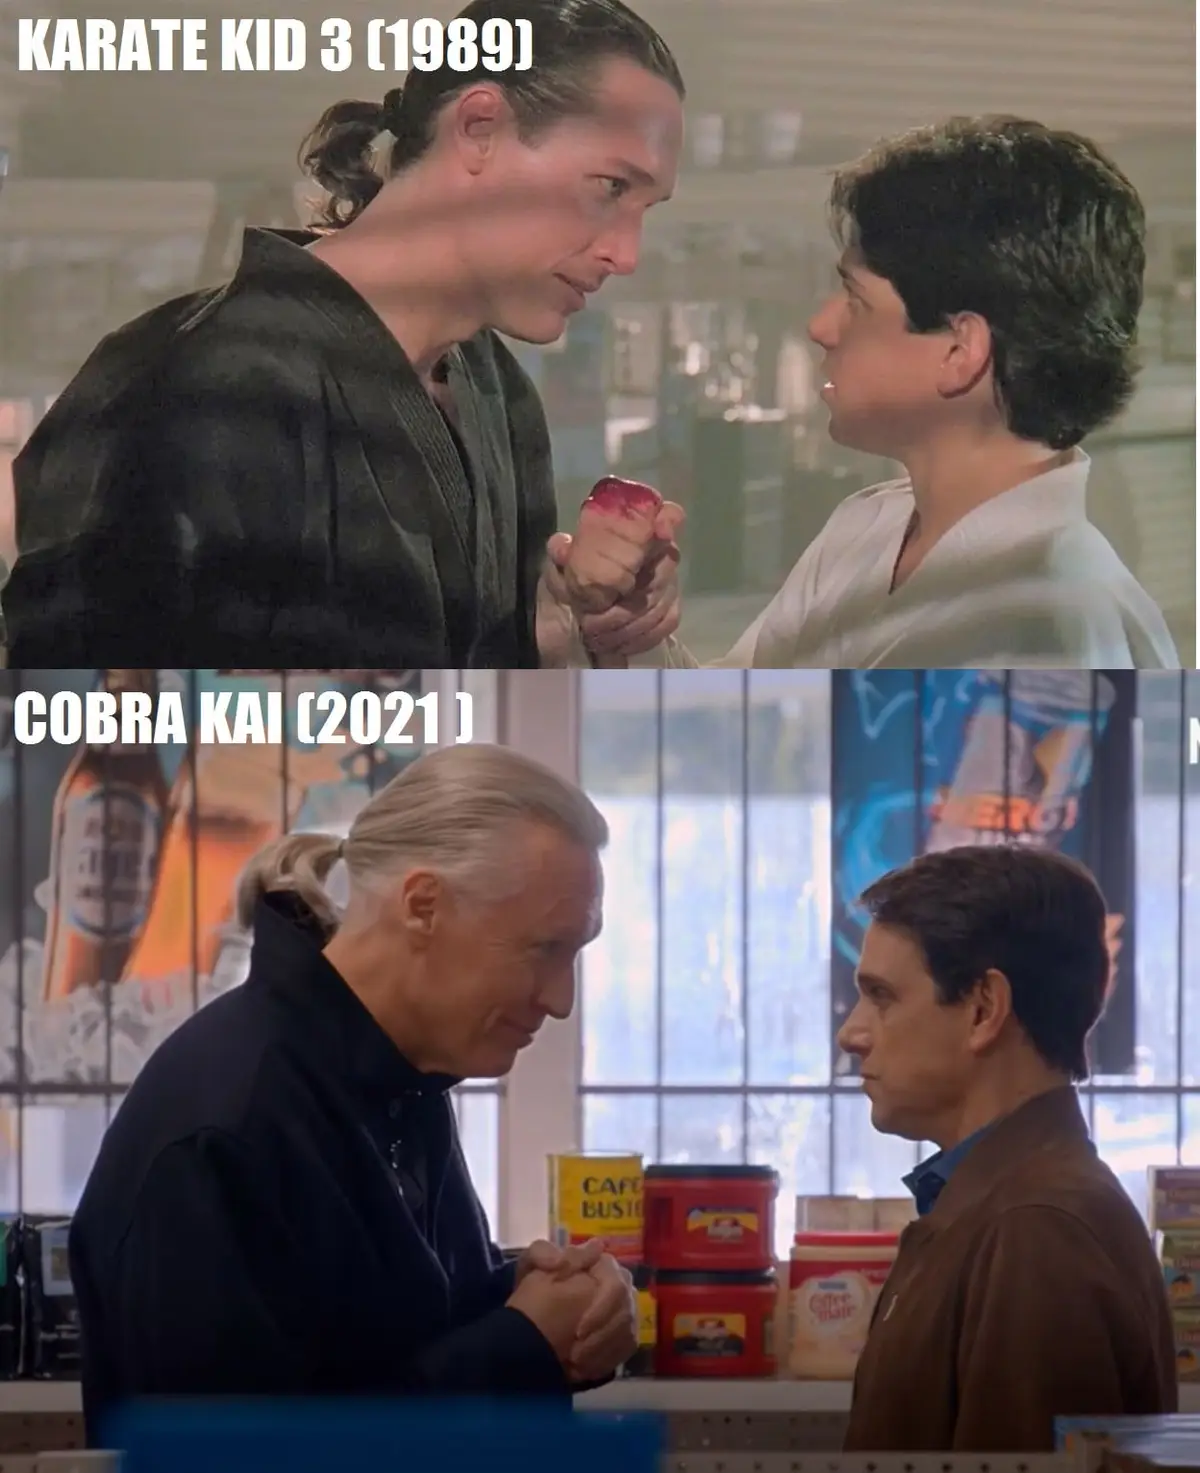 karate kid vs cobra kai